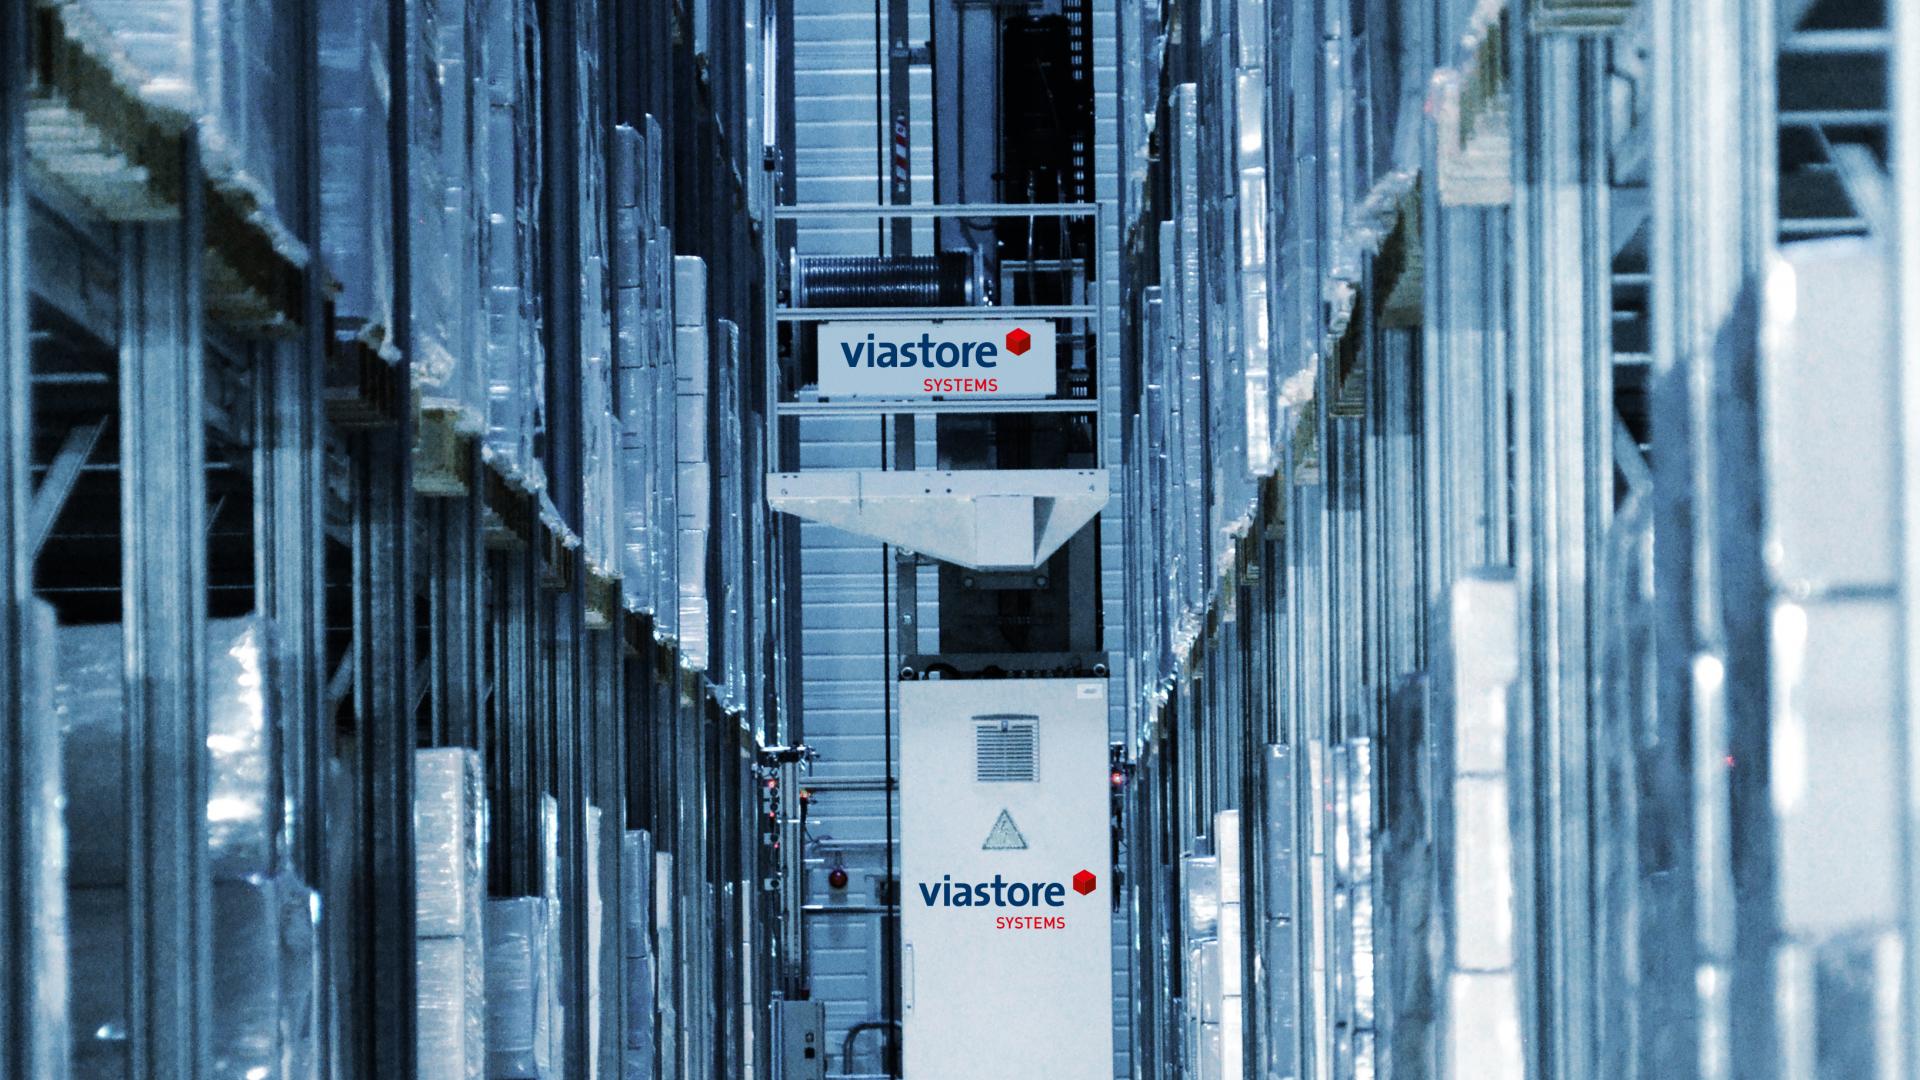 skladovací a vyhledávací systém viastore ve vysokopodlažním skladu dodavatele automobilů Alcar